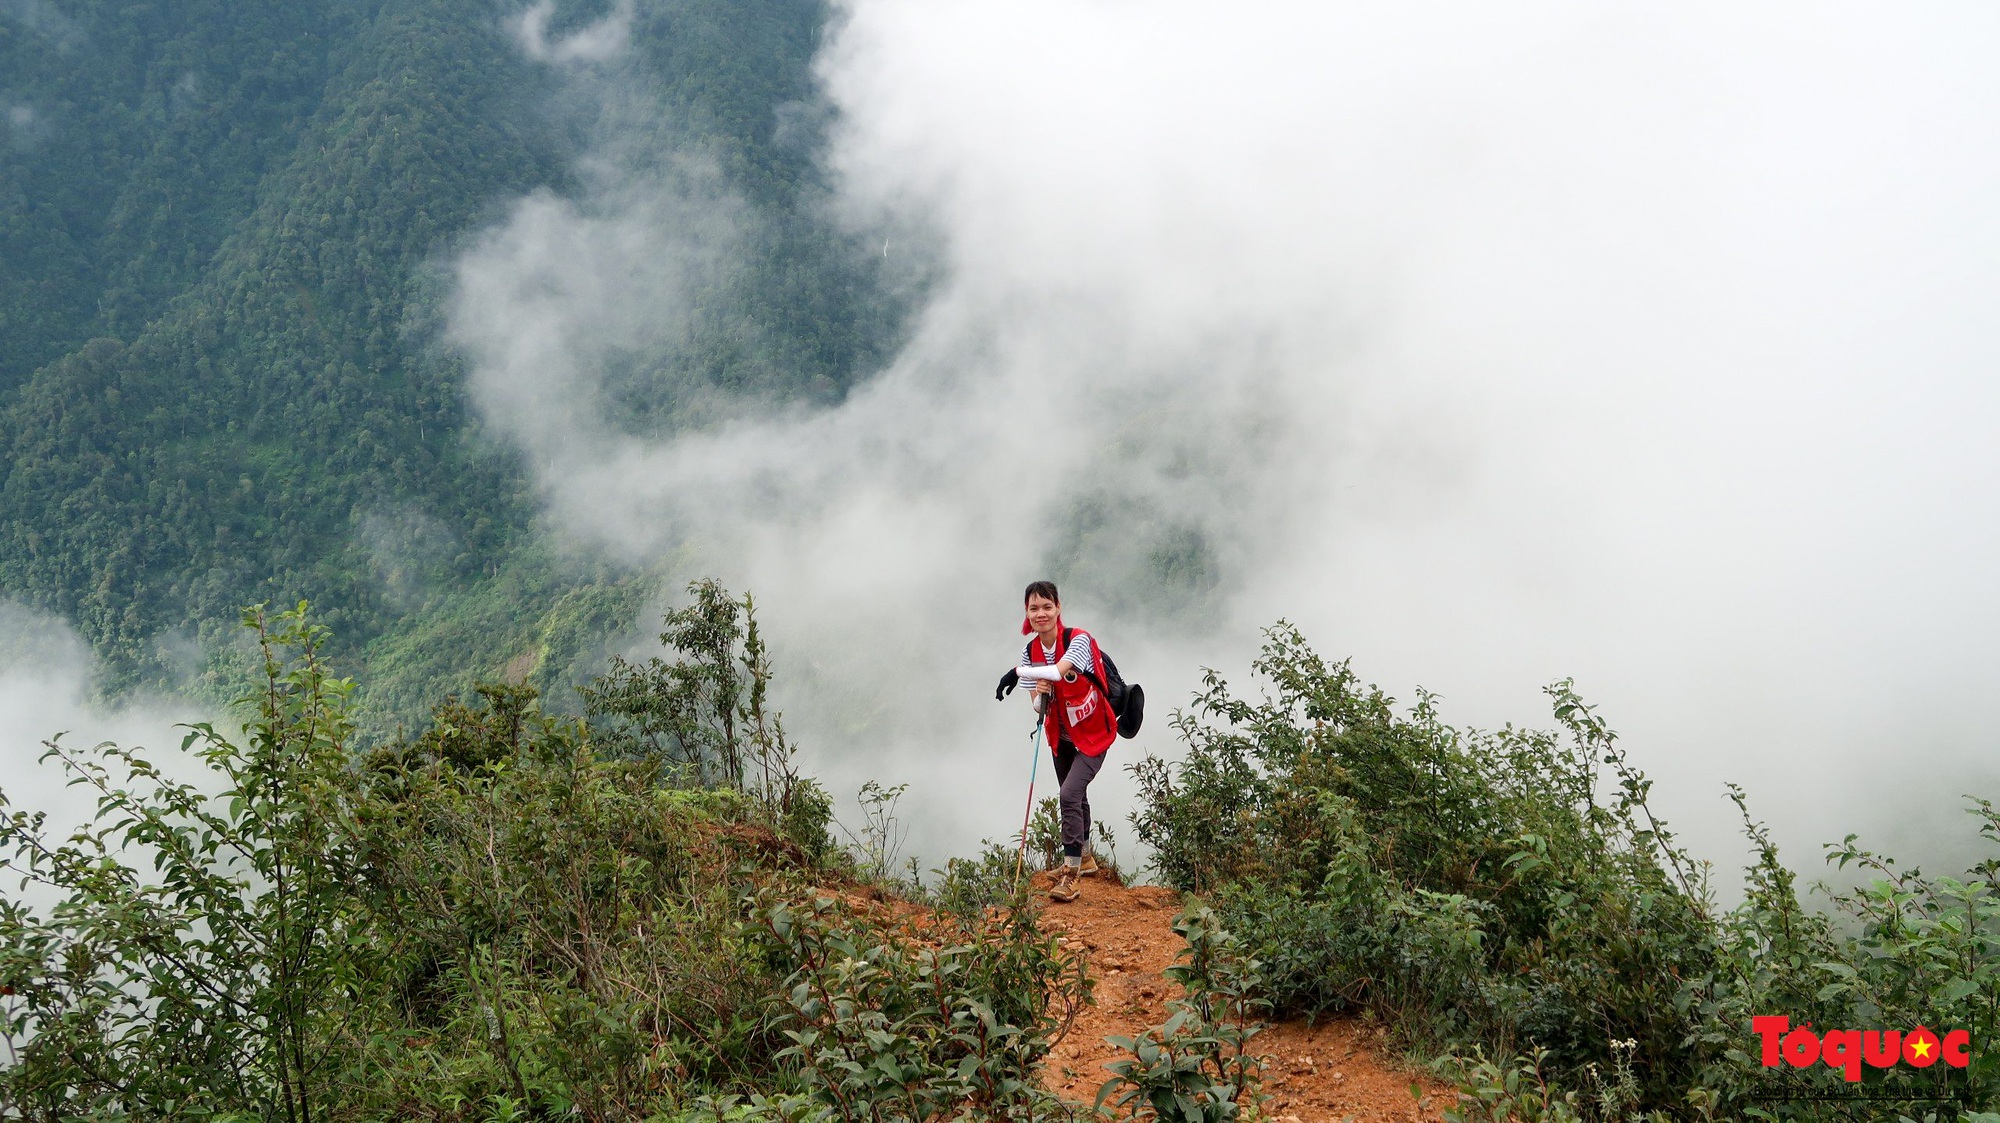 Hơn 100 nhà báo, phóng viên chinh phục đỉnh Tà Chì Nhù ở độ cao 2927m - Ảnh 12.